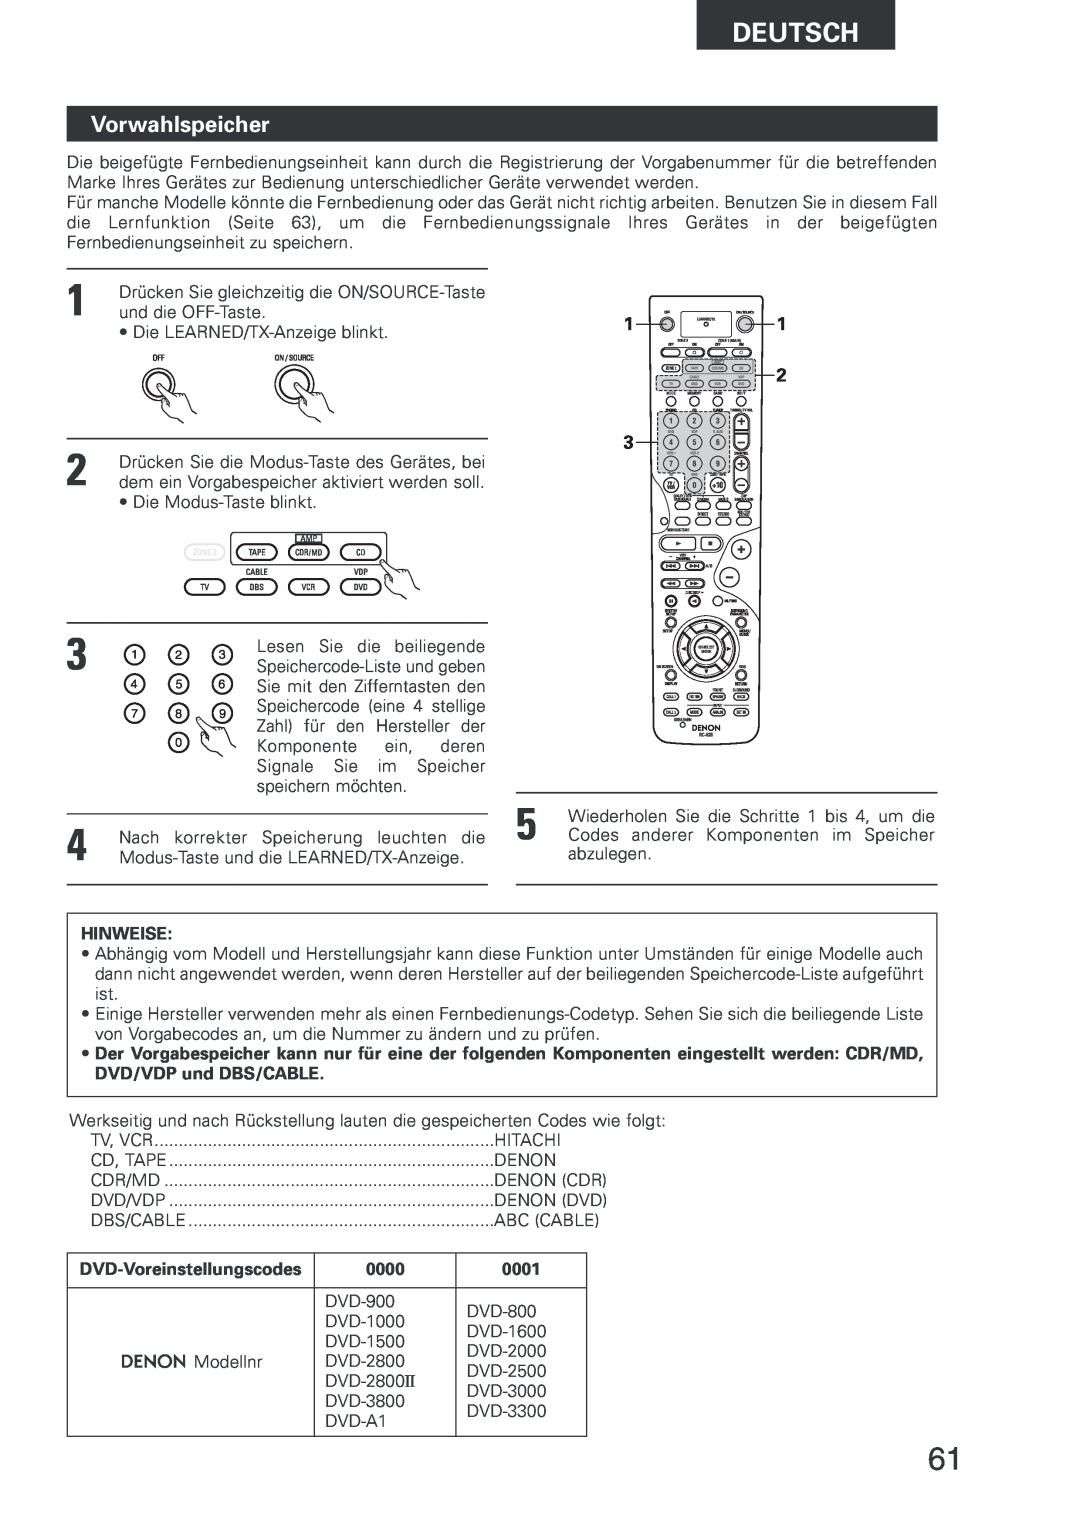 Denon AVR-2803 manual Vorwahlspeicher, DVD-Voreinstellungscodes, 0000, 0001, Deutsch, Hinweise 